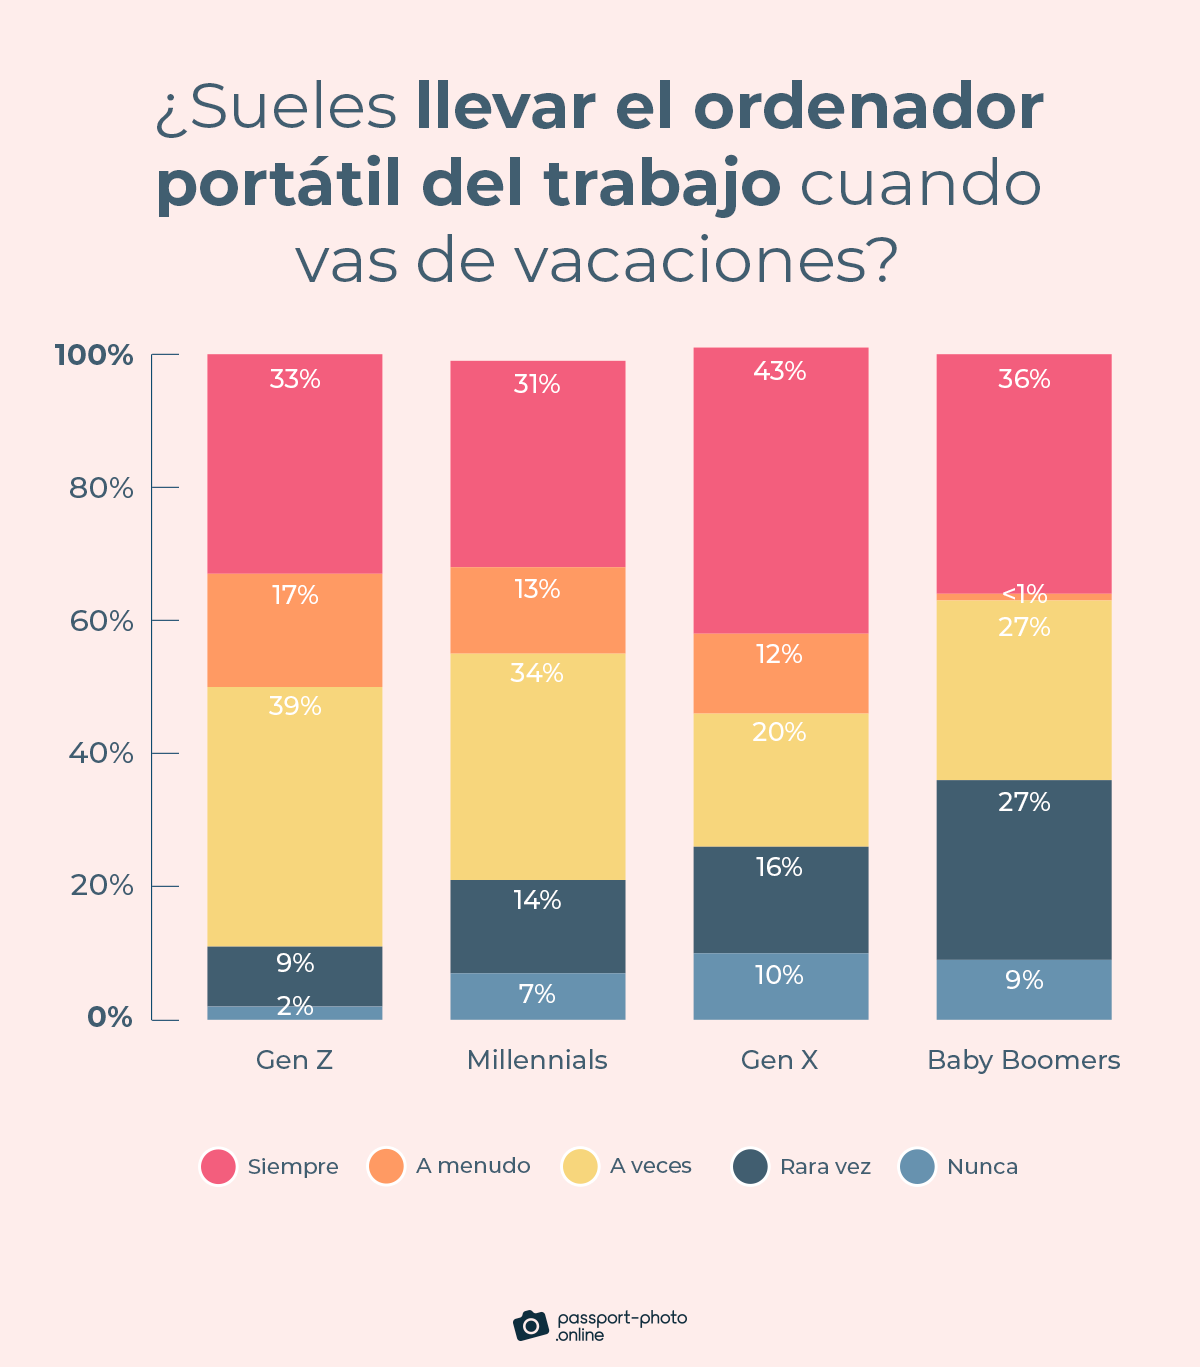 tan solo un 12% de los trabajadores dicen no llevar el ordenador portátil nunca o rara vez cuando se van de vacaciones